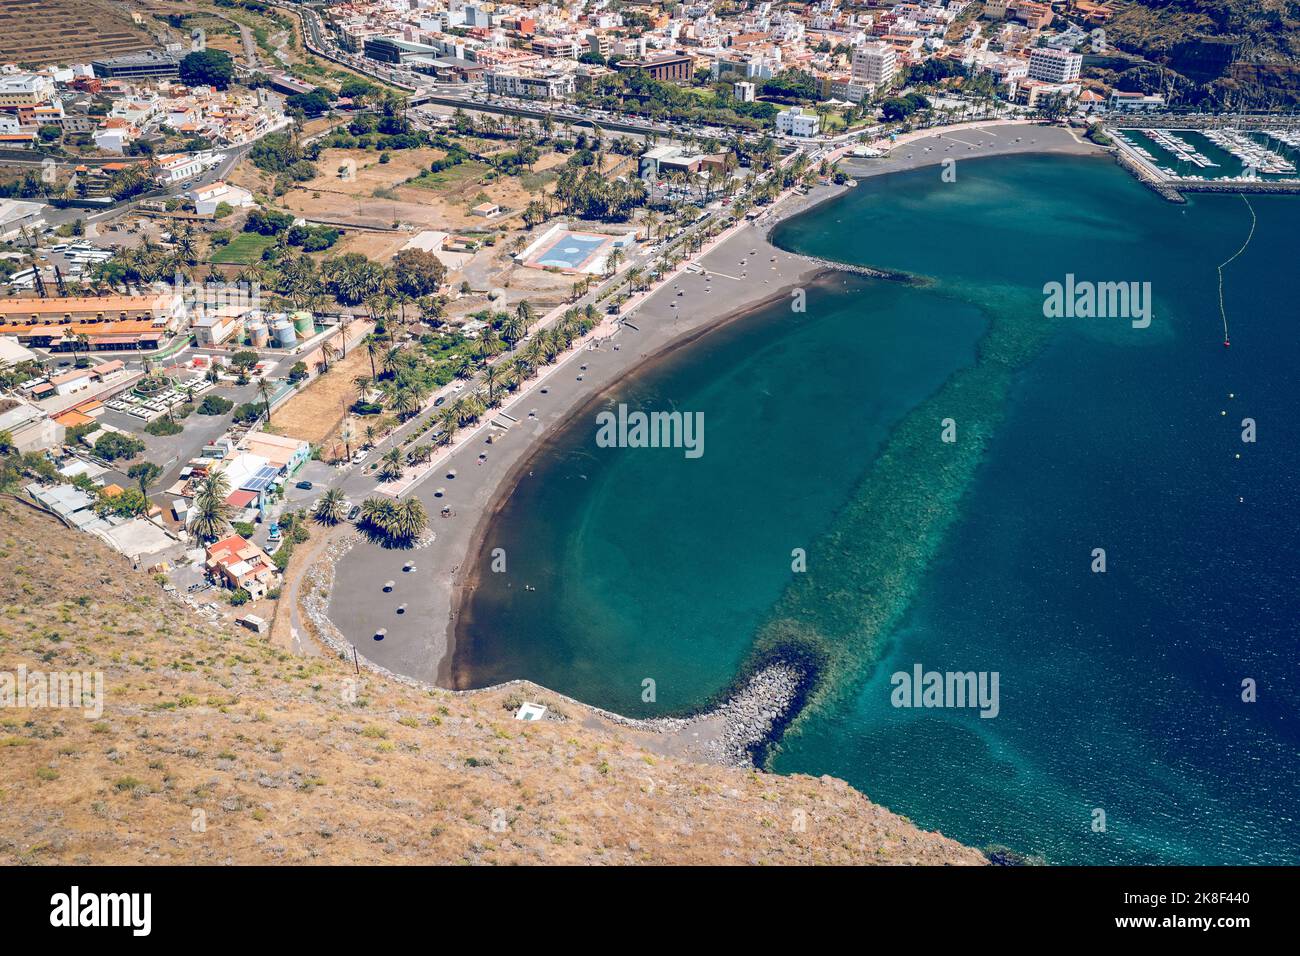 La Gomera. Aerial photo of the San Sebastian marina and town, La Gomera, Canary Islands. Stock Photo